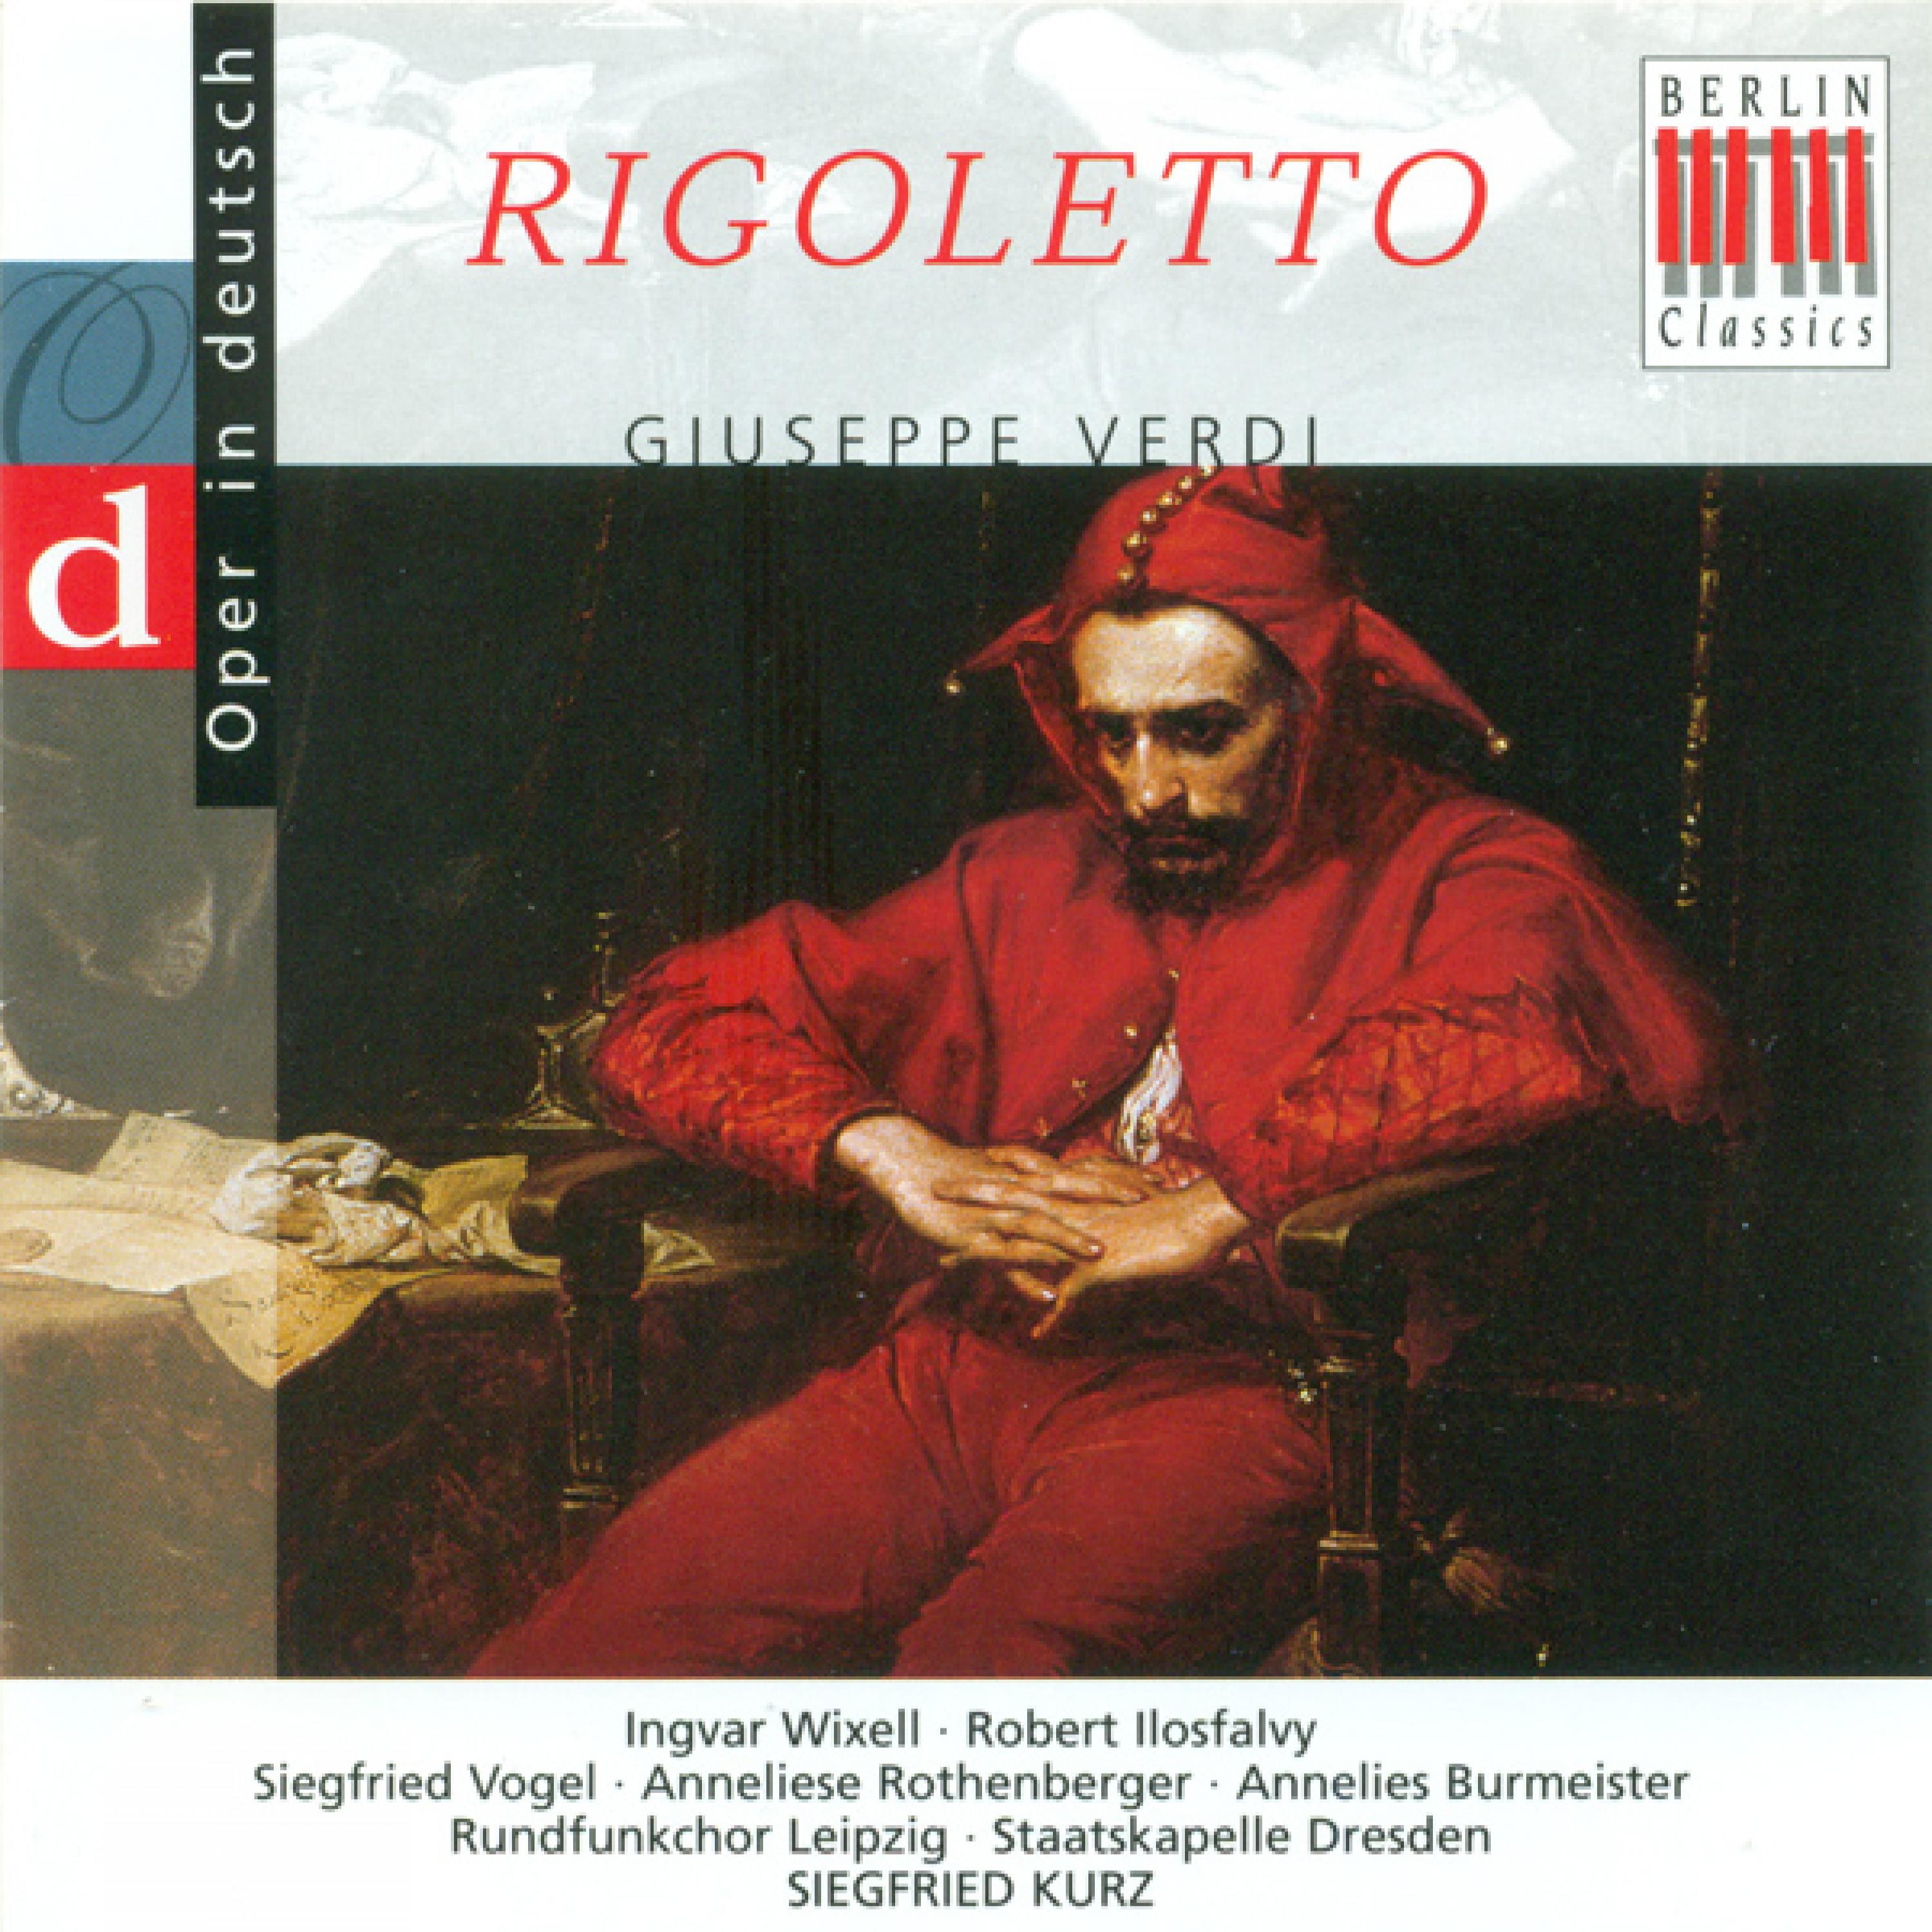 Rigoletto, Act III: "Mitternacht!" - "Wer ist statt seiner im Sacke?"